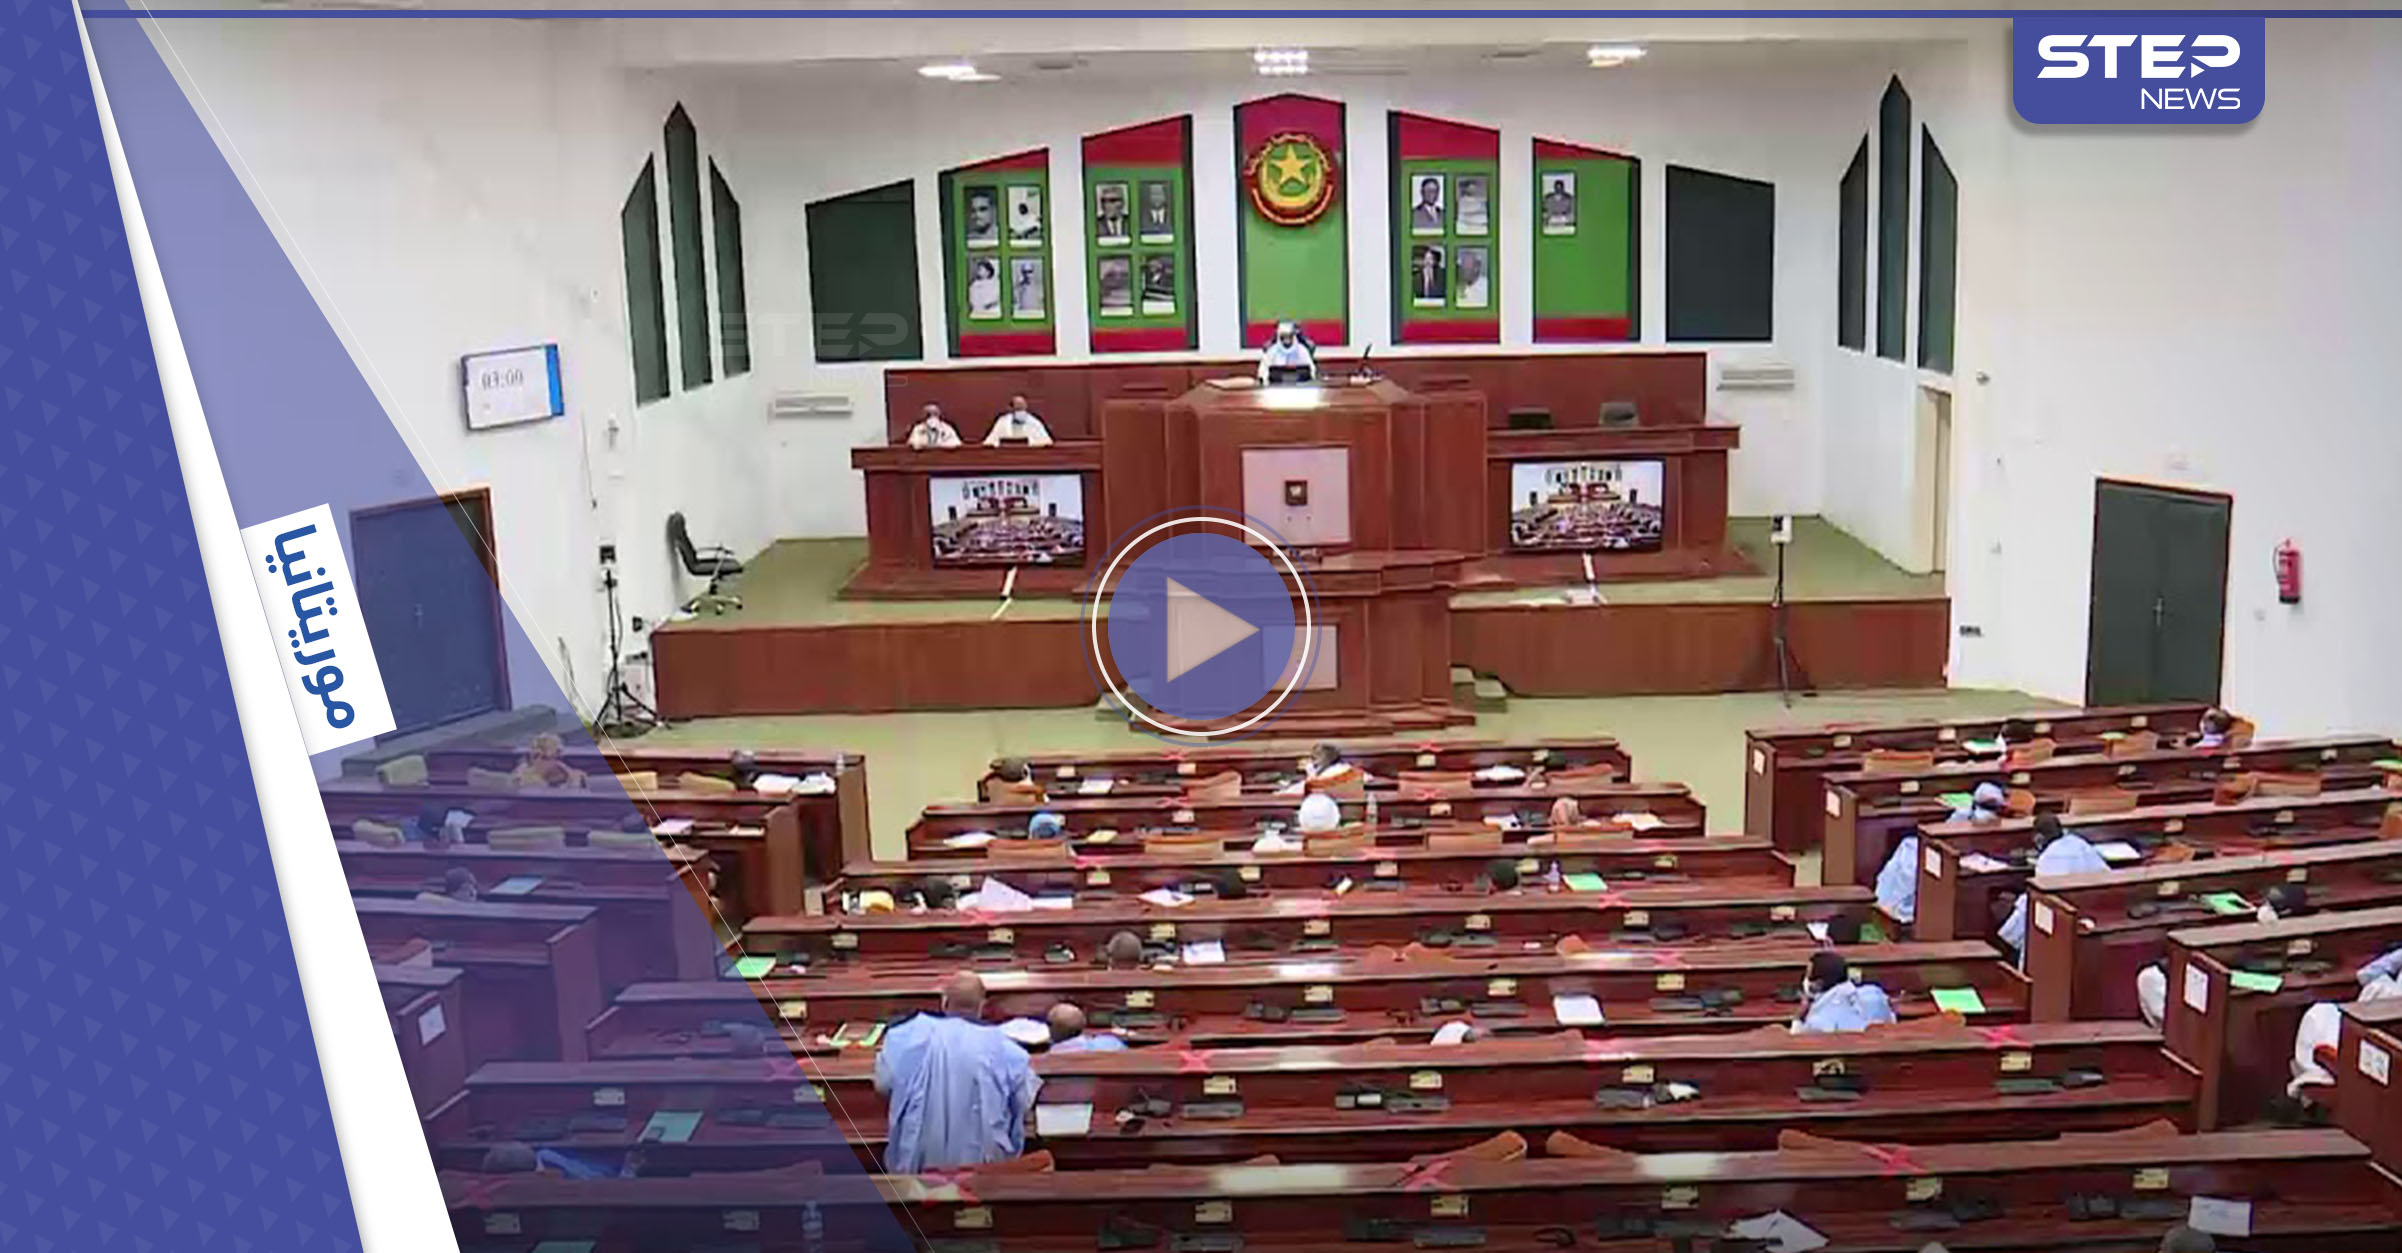 بالفيديو|| جدل ونقاش حاد في البرلمان الموريتاني بسبب "الصلاة على النبي محمد" واعتبارها مضيعة للوقت